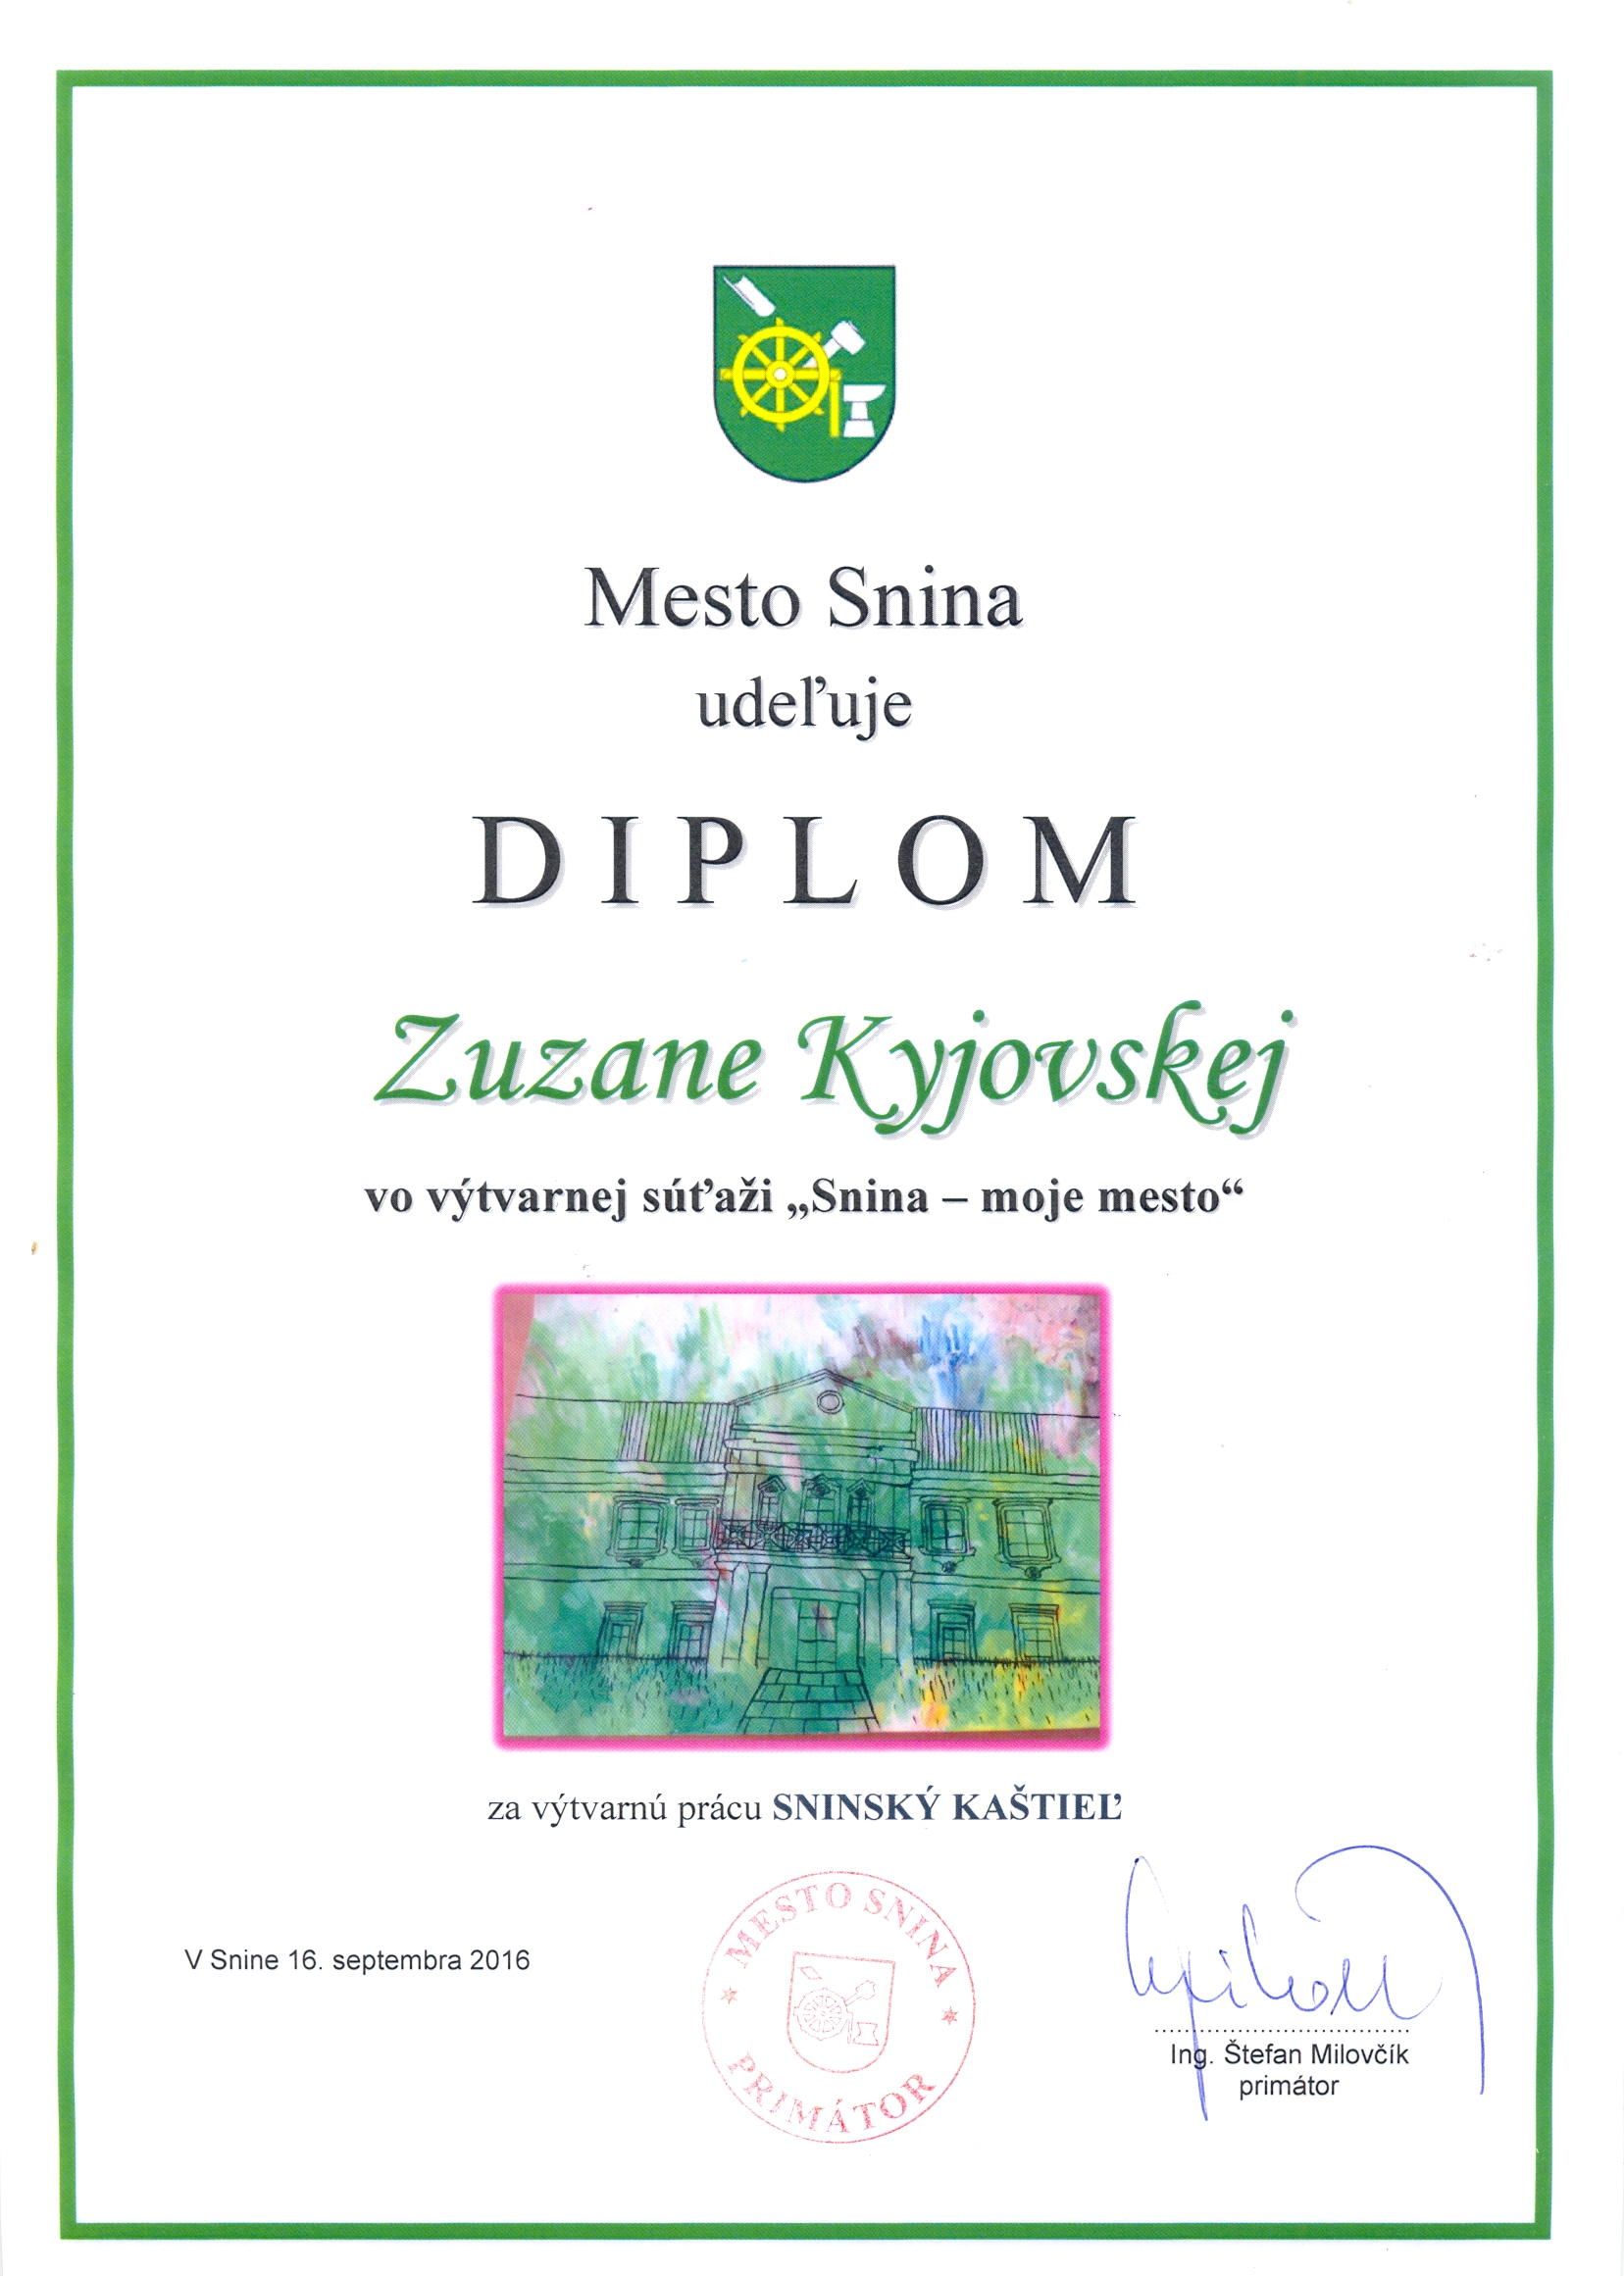 Zuzana Kyjovská - diplom0001